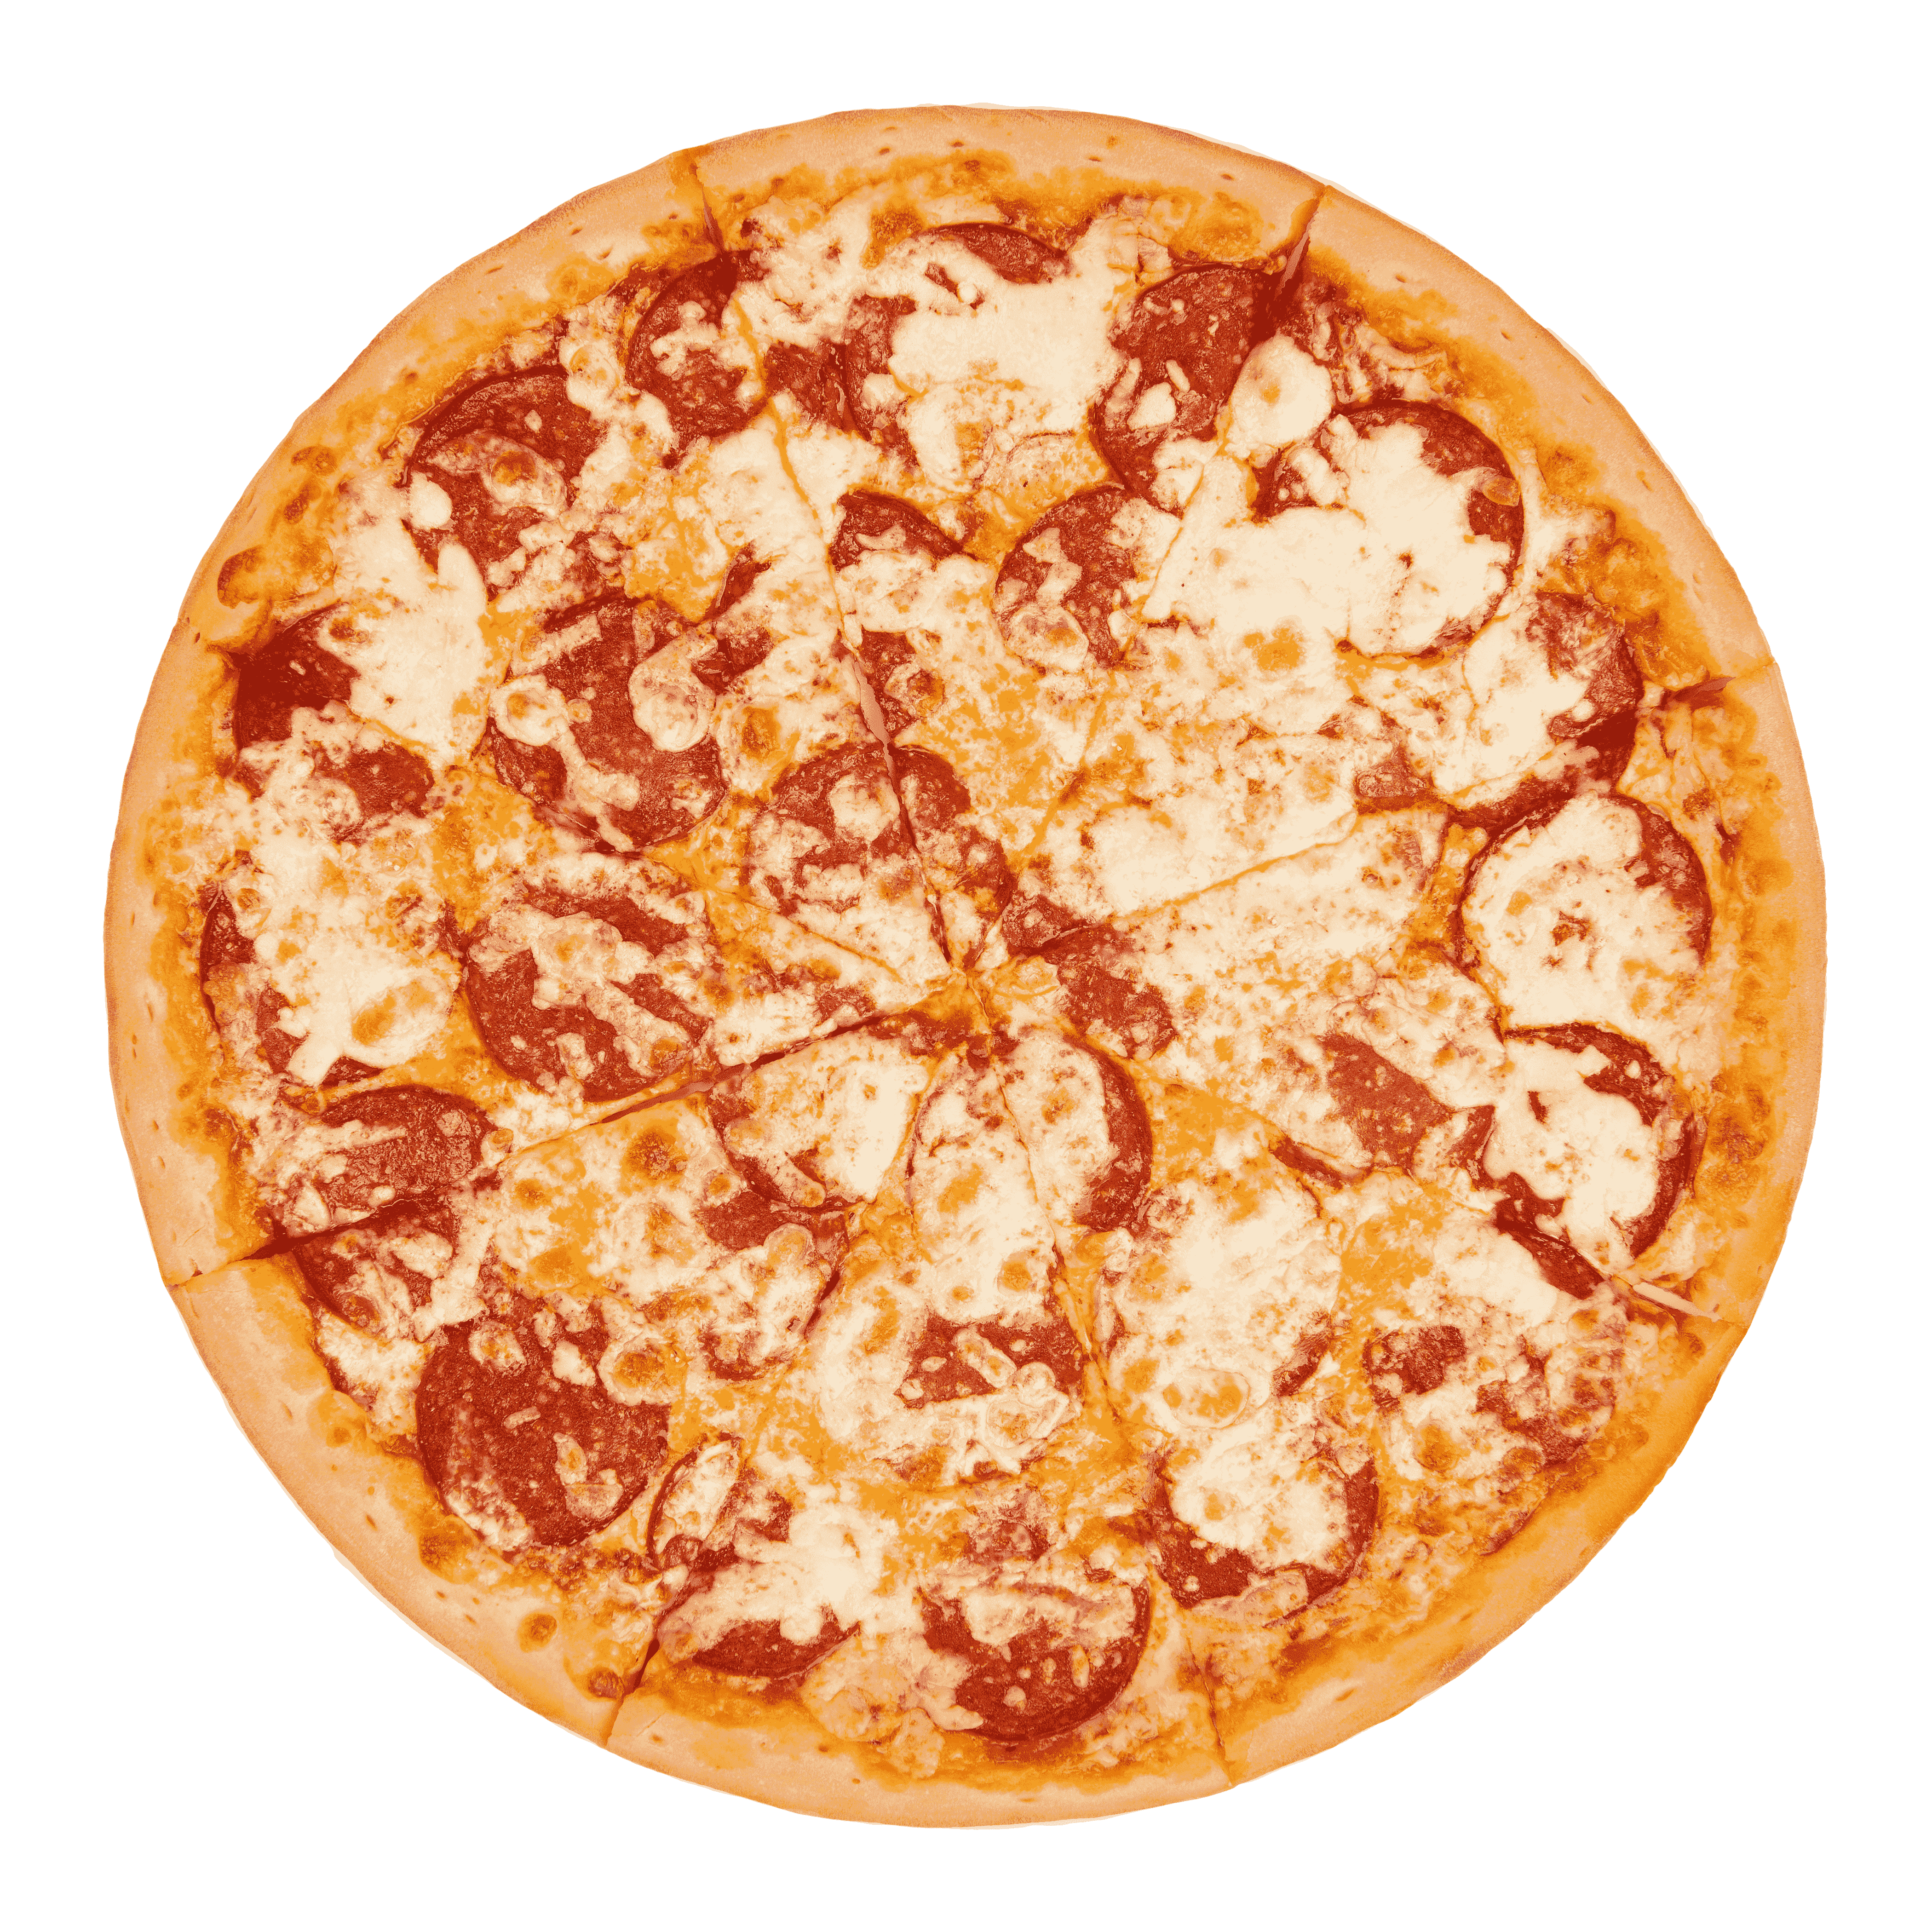 Хот пицца иркутск сайт. Пицца пепперони без фона. Пицца в форме сердца. Пицца hot. Пицца хот карии.